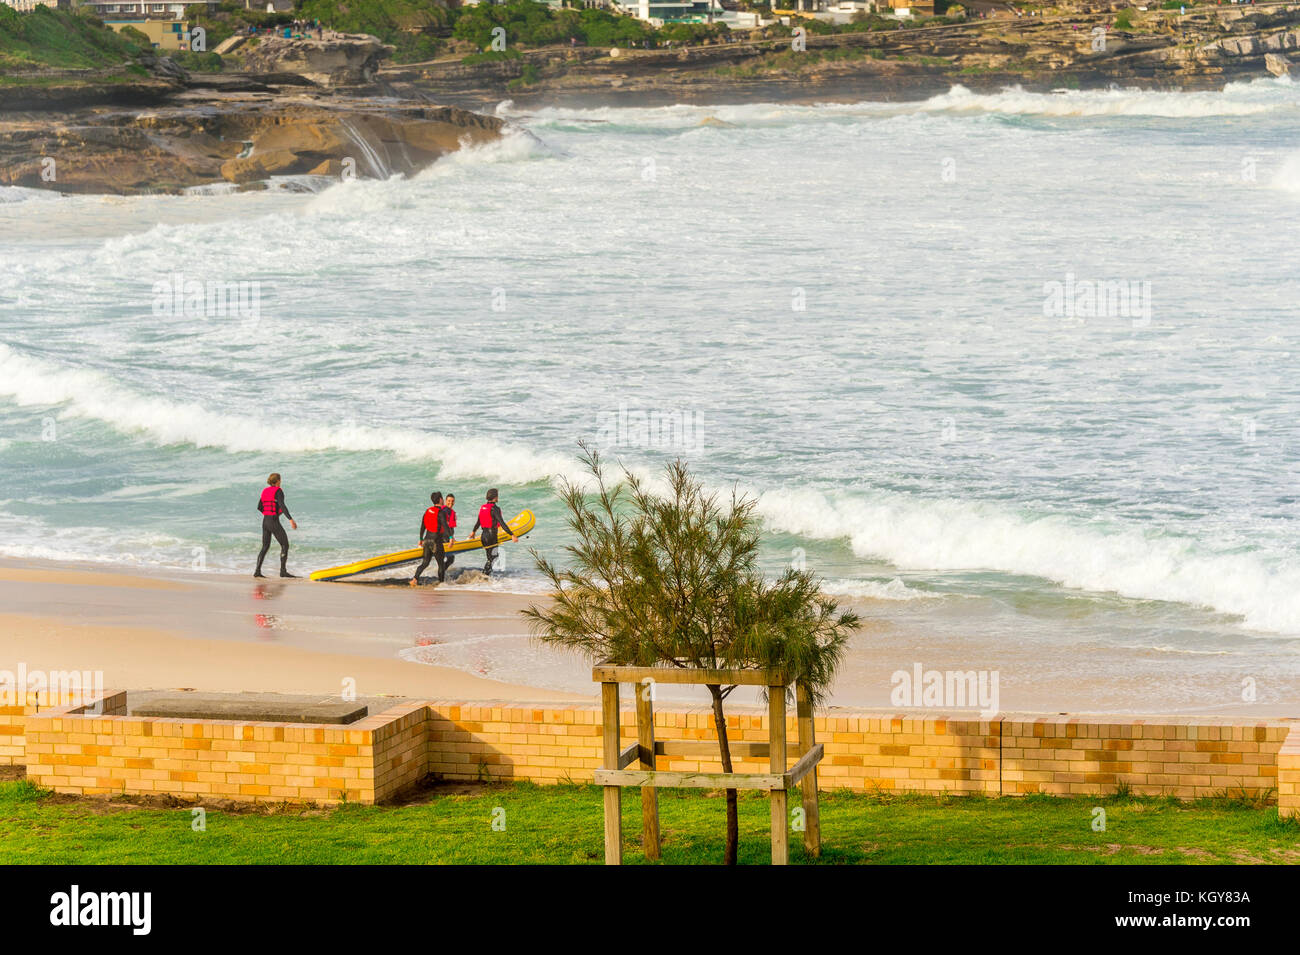 Le caoutchouc ducky chefs d'équipage dans des conditions de surf sauvage à Bronte Beach à Sydney, NSW, Australie Banque D'Images